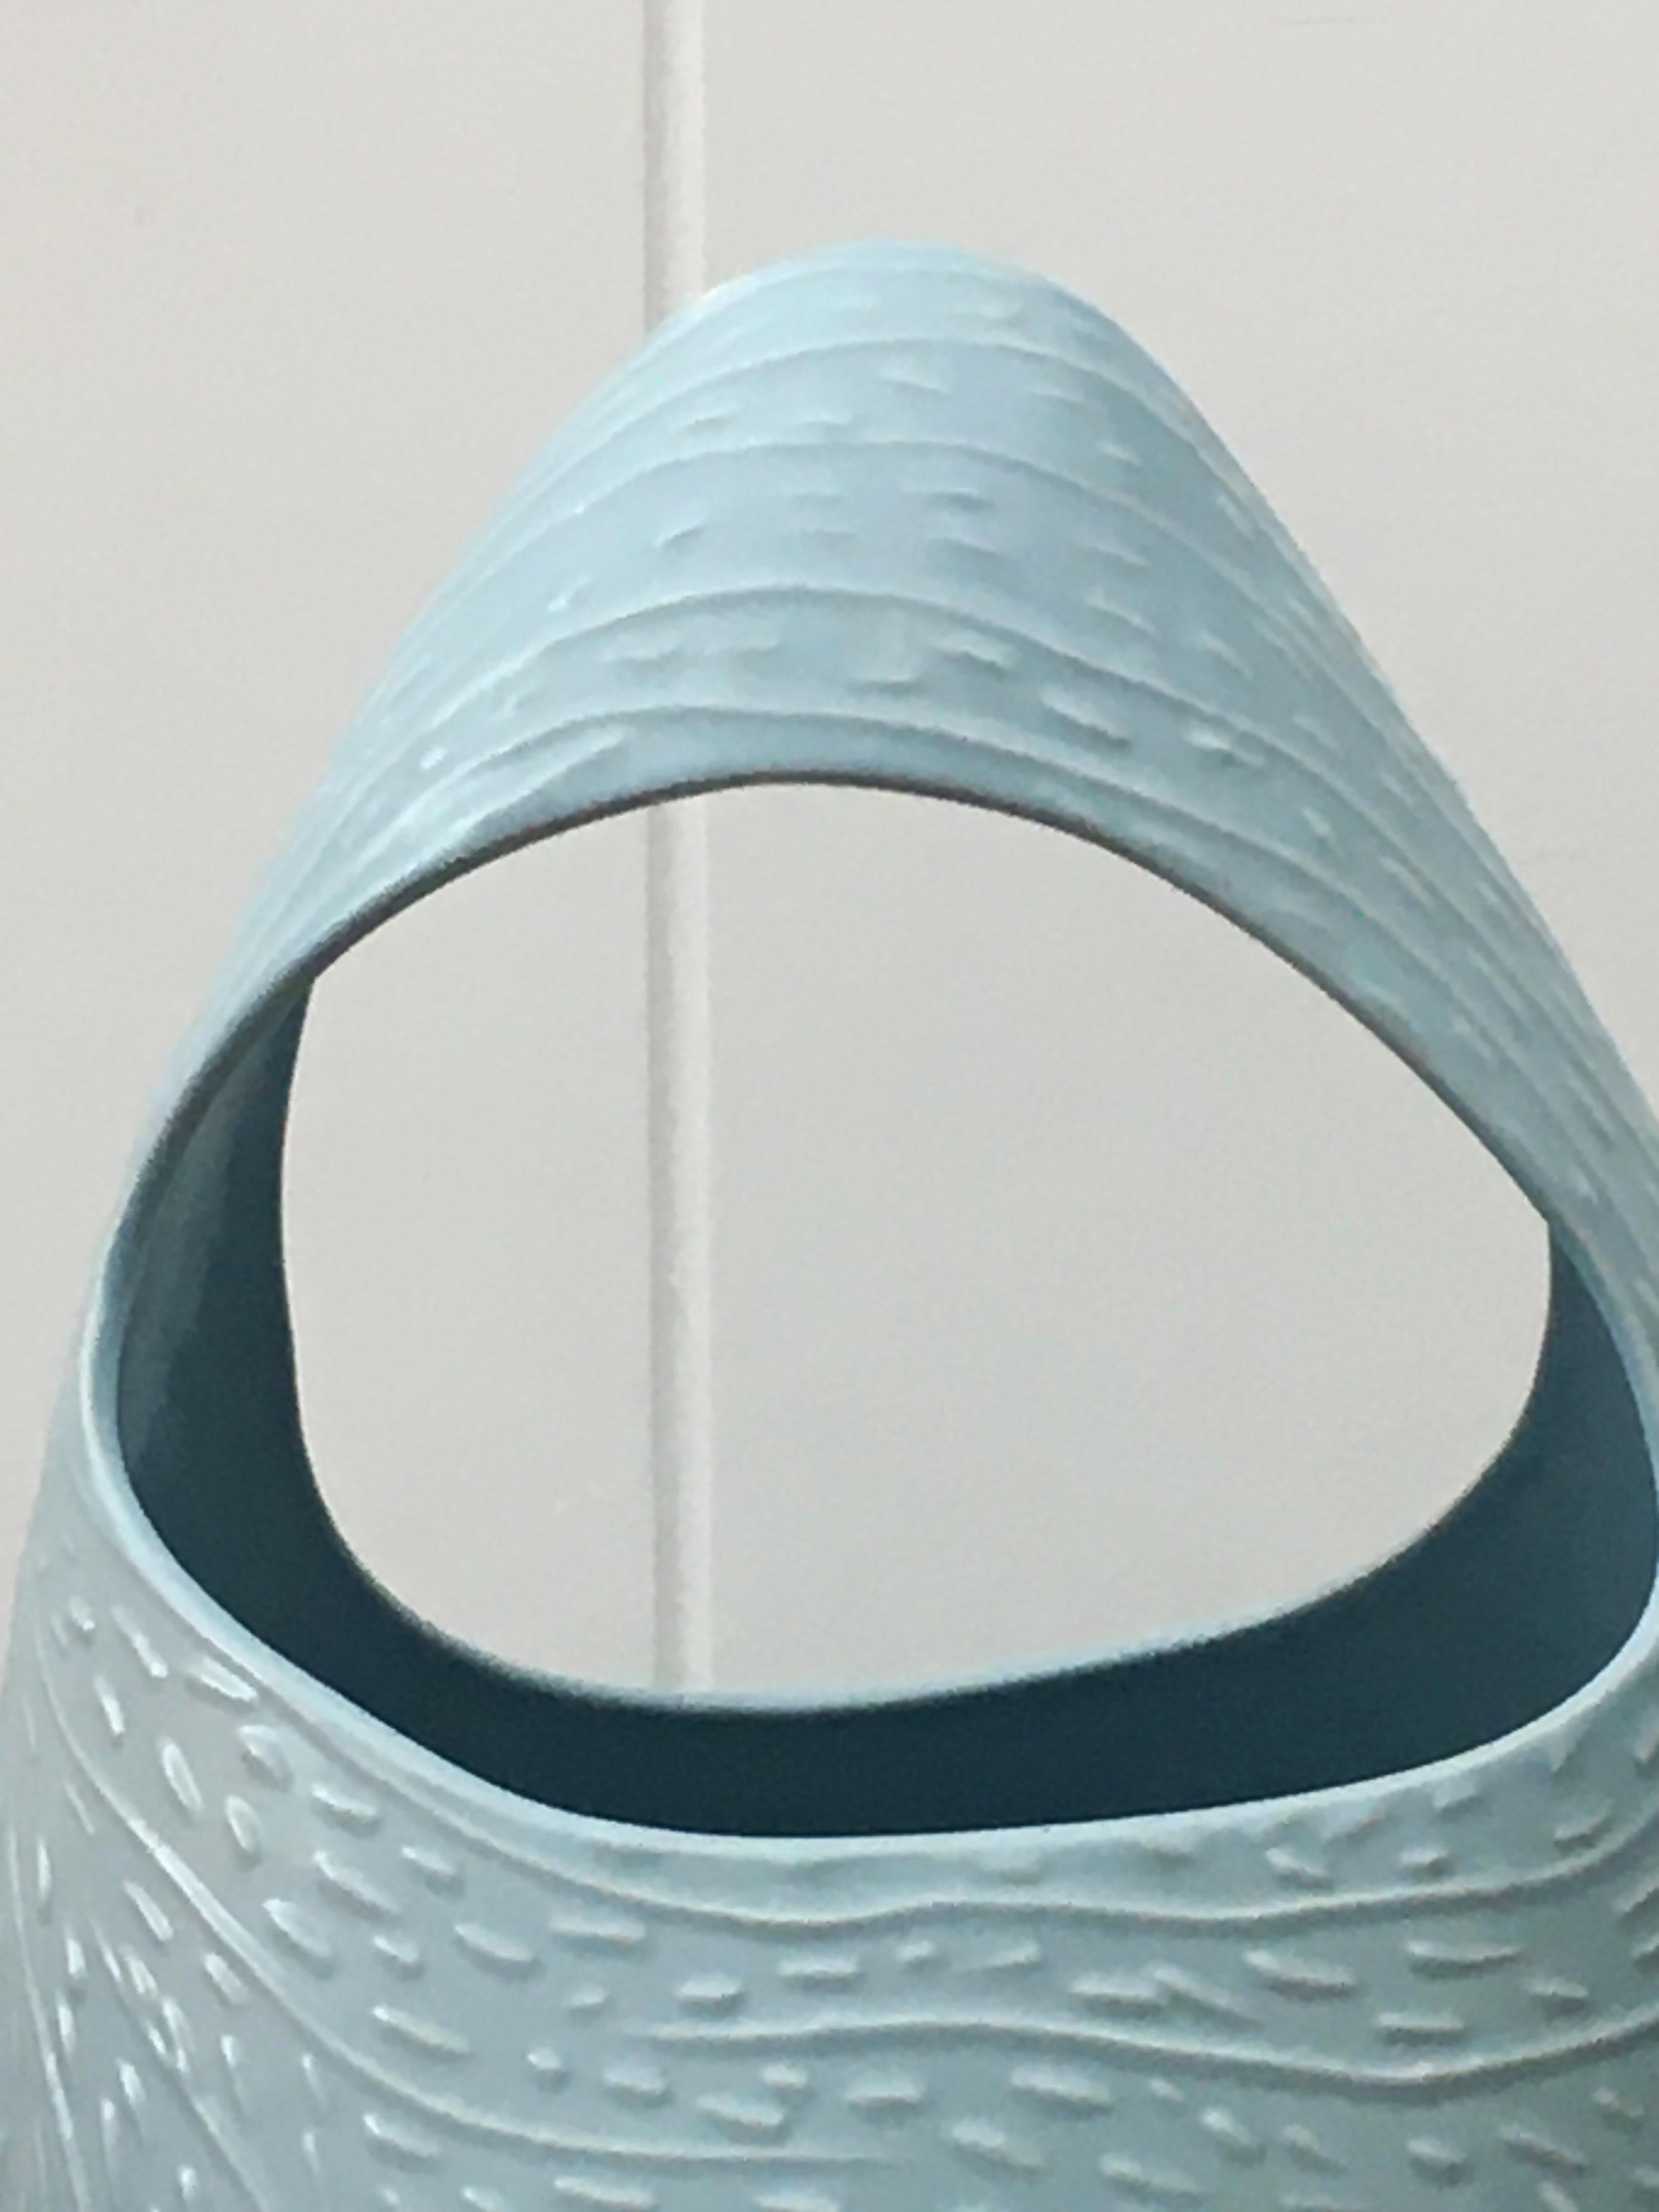 Ceramic Umbrella Stand Model C300 by Antonia Campi for S.C.I. Laveno